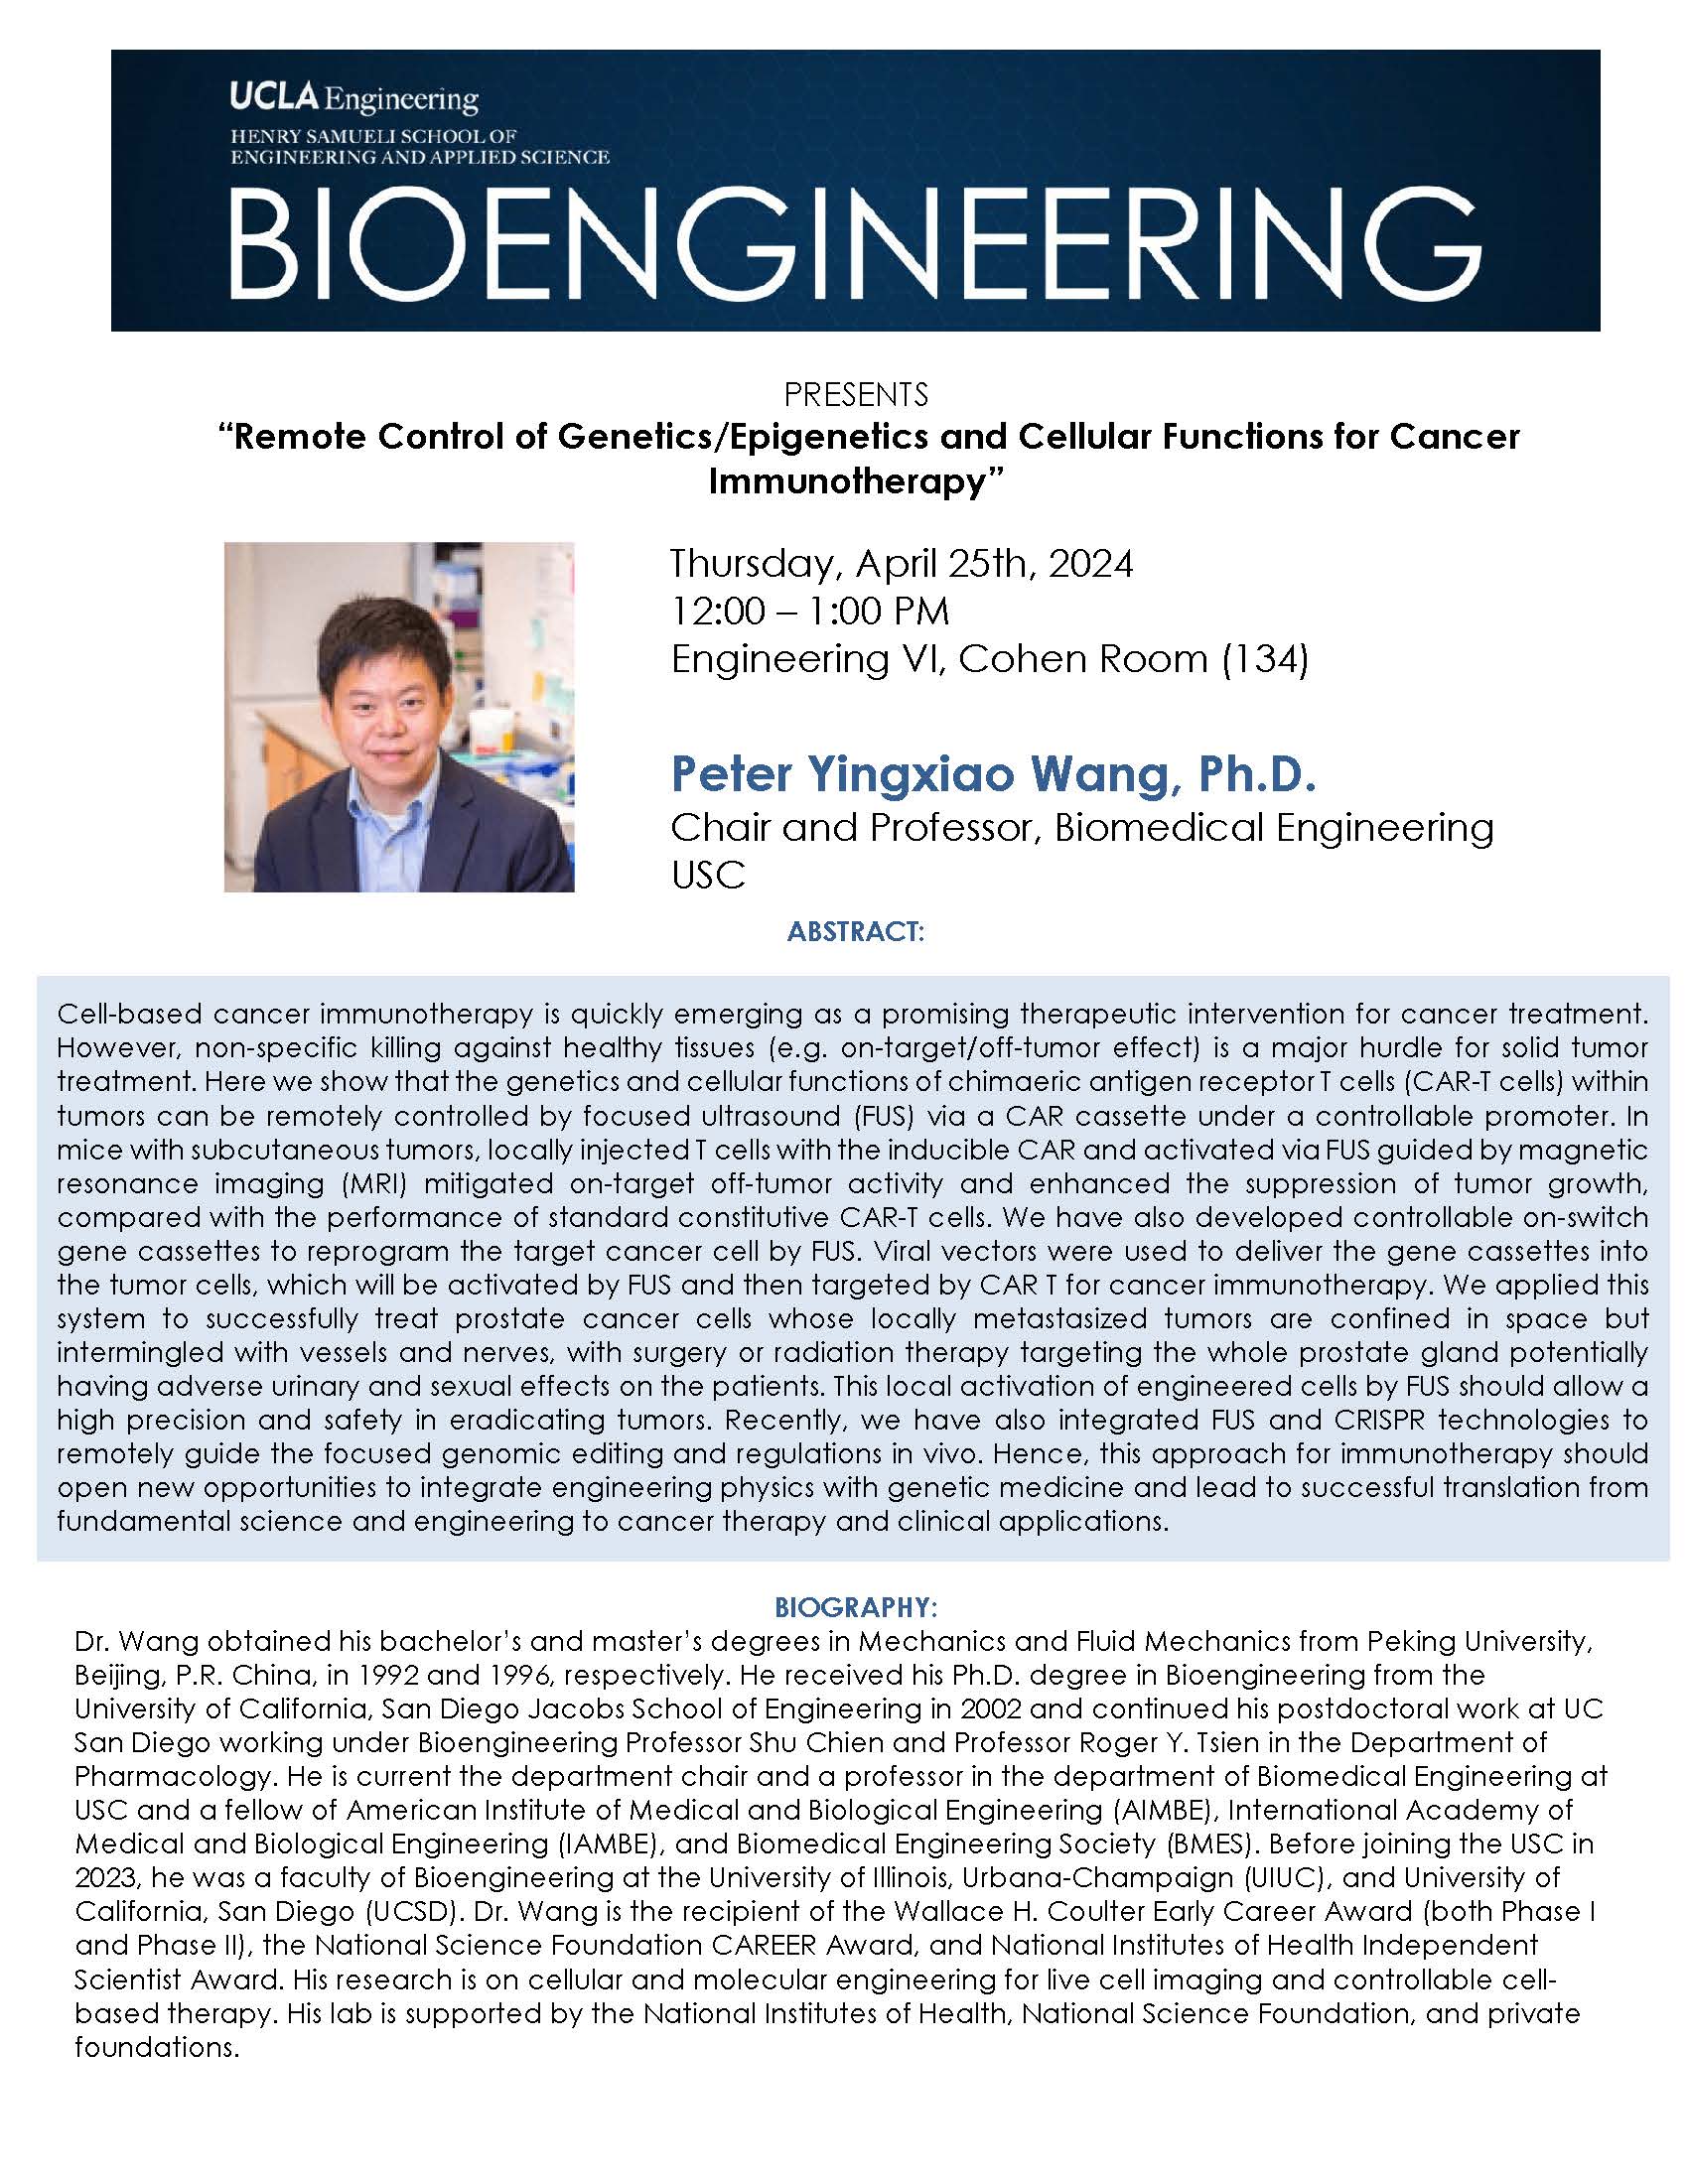 BE 299 Seminar: Peter Wang, Ph.D.